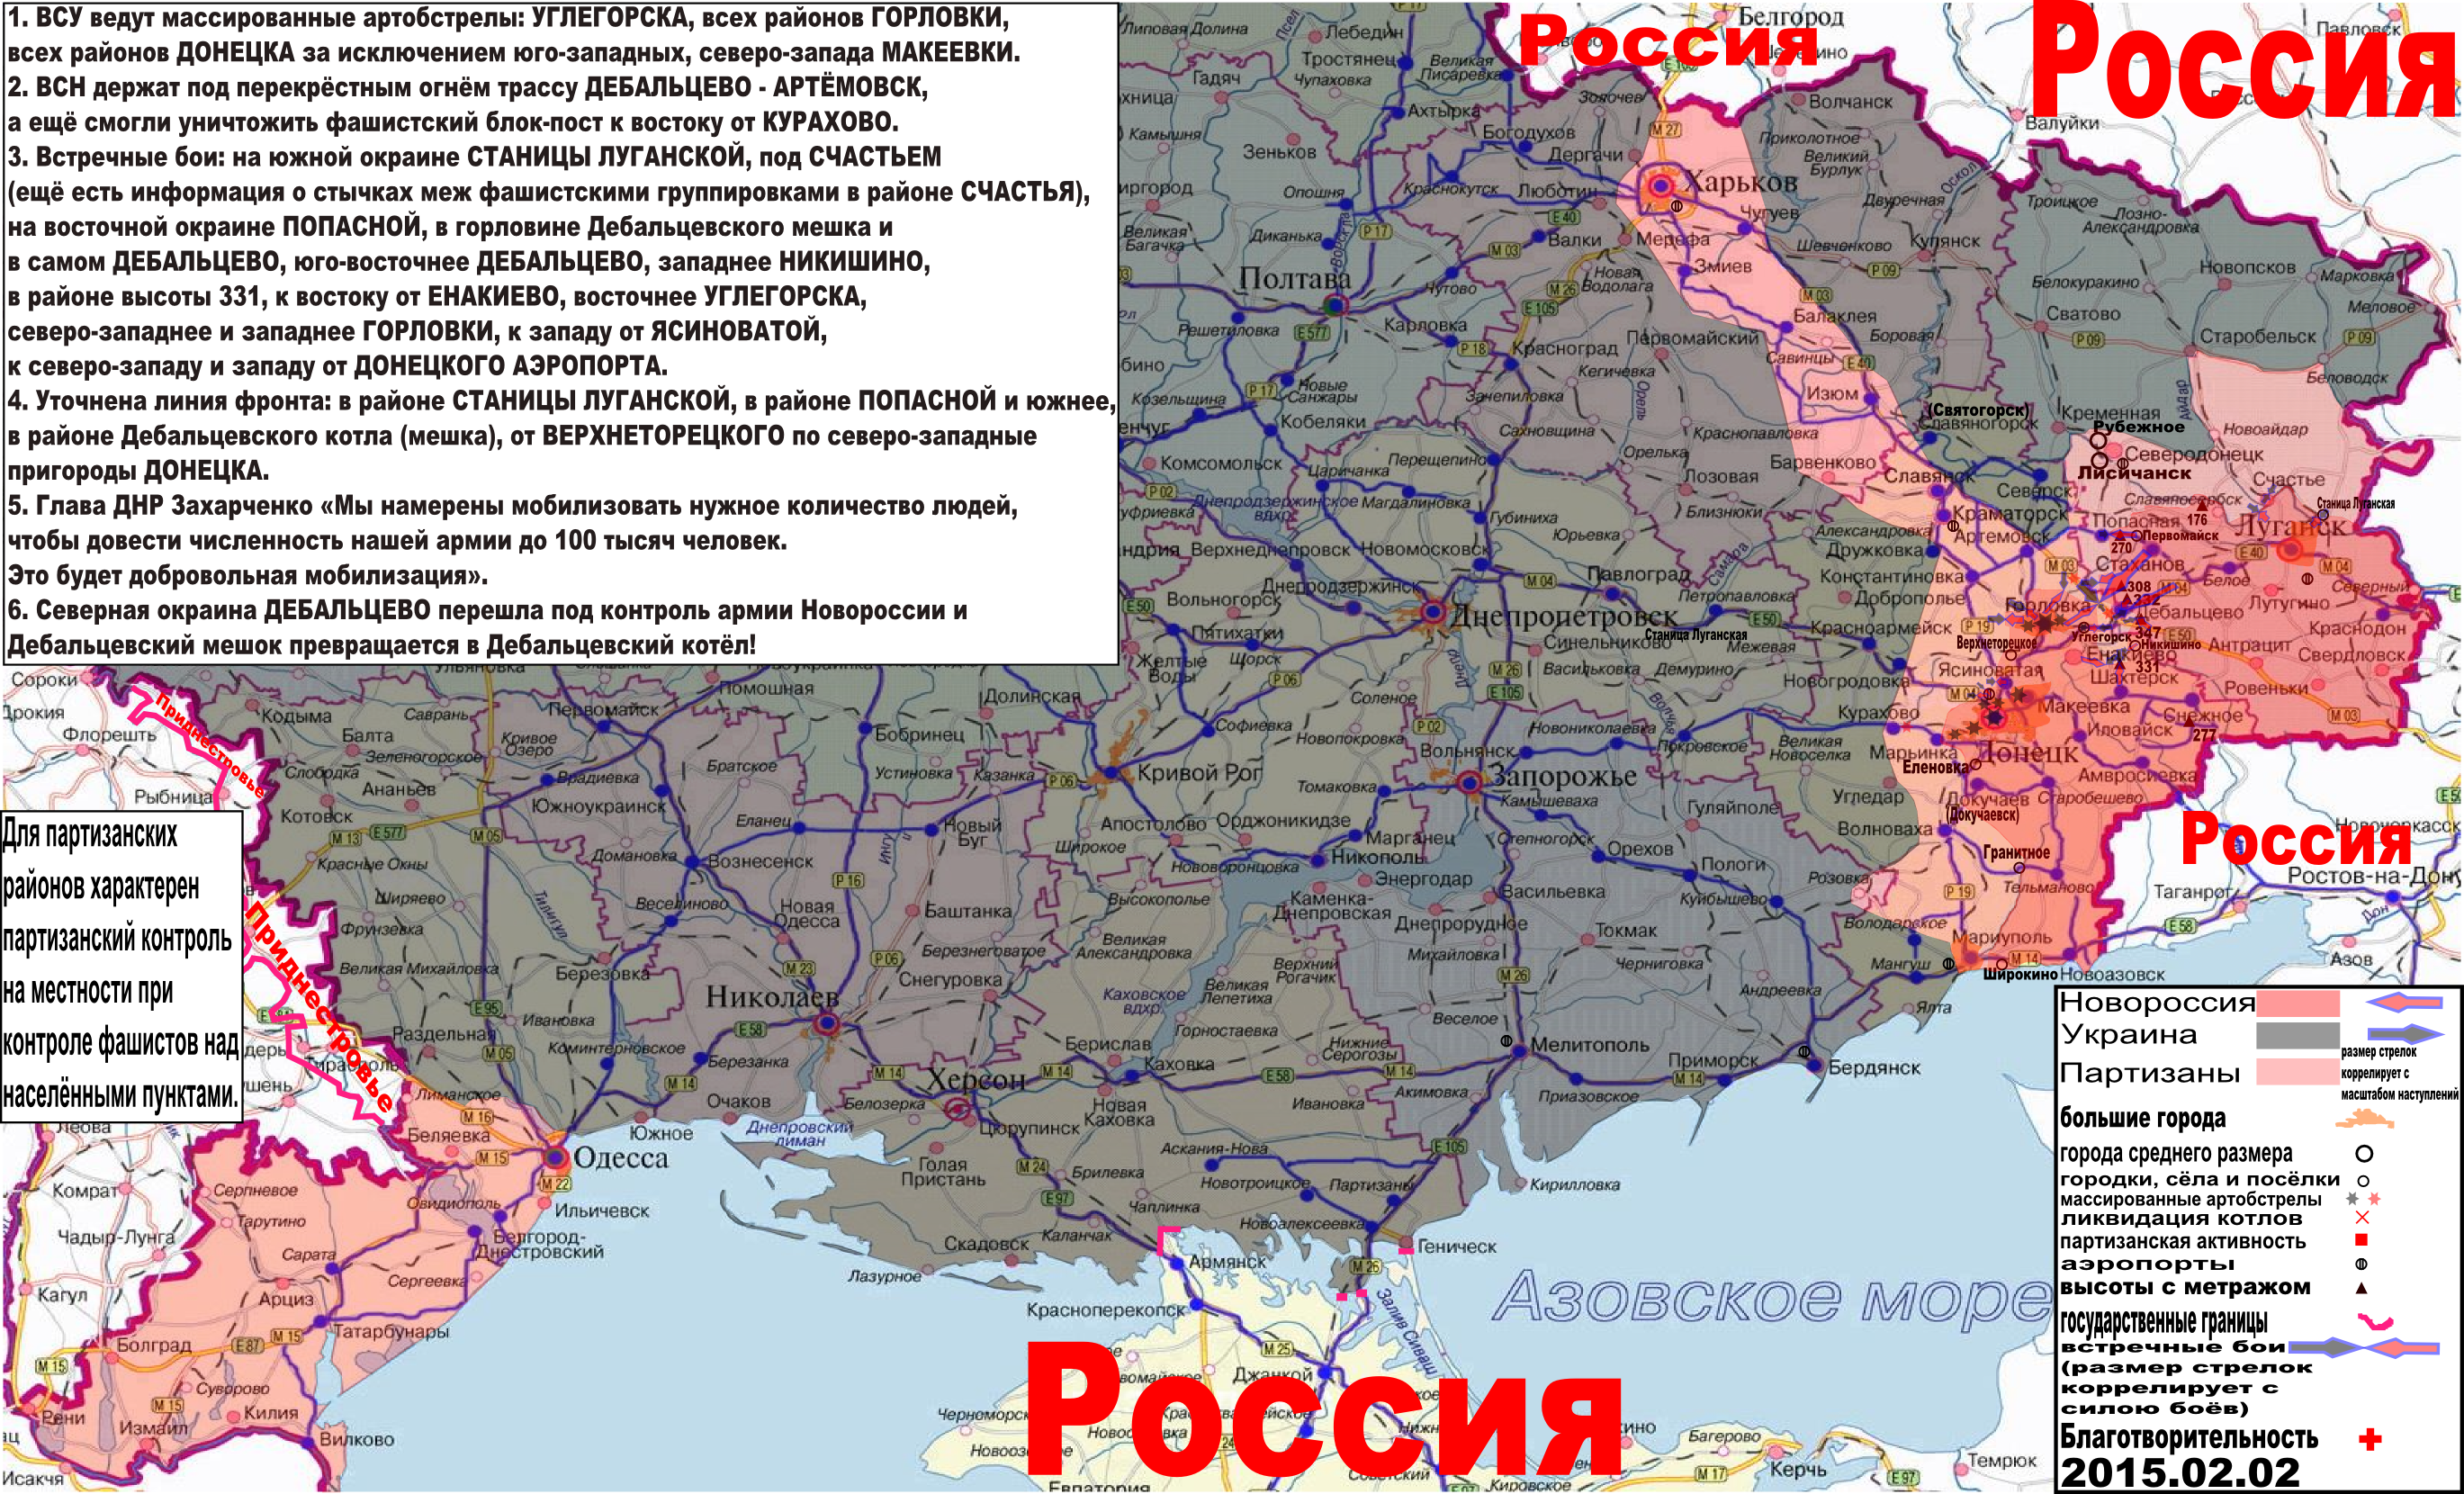 Карта боевых действий и событий в Новороссии с обозначением зон партизанской активности за 2 февраля 2015